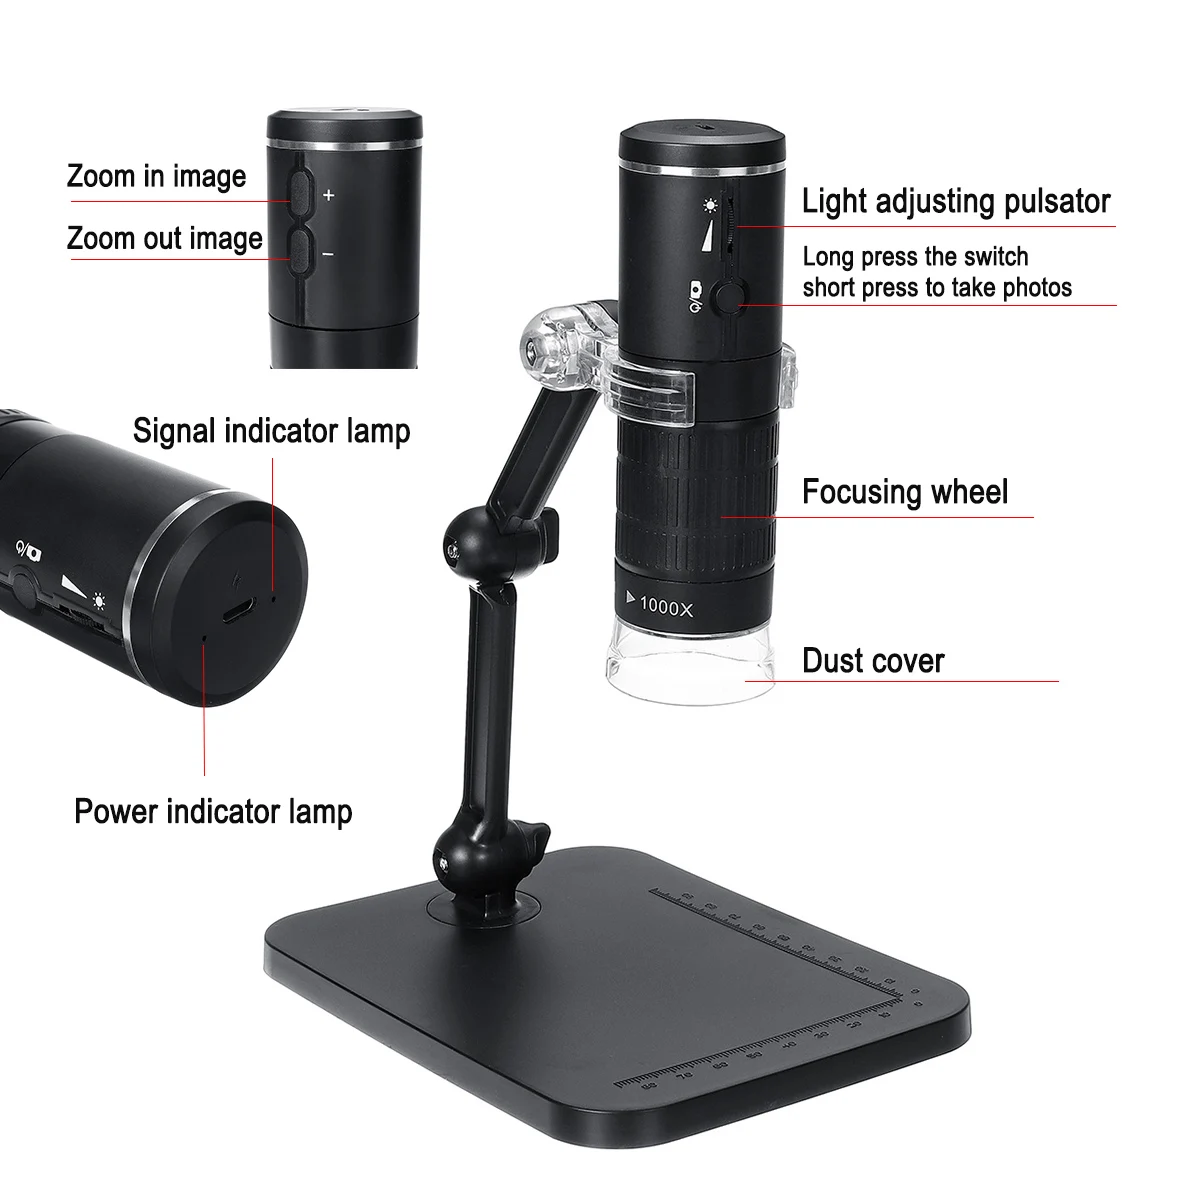 2MP Full HD 1080P wifi USB цифровой микроскоп Magnifie 1000x8 светодиодный микроскоп Лупа камера для ios Android обучения